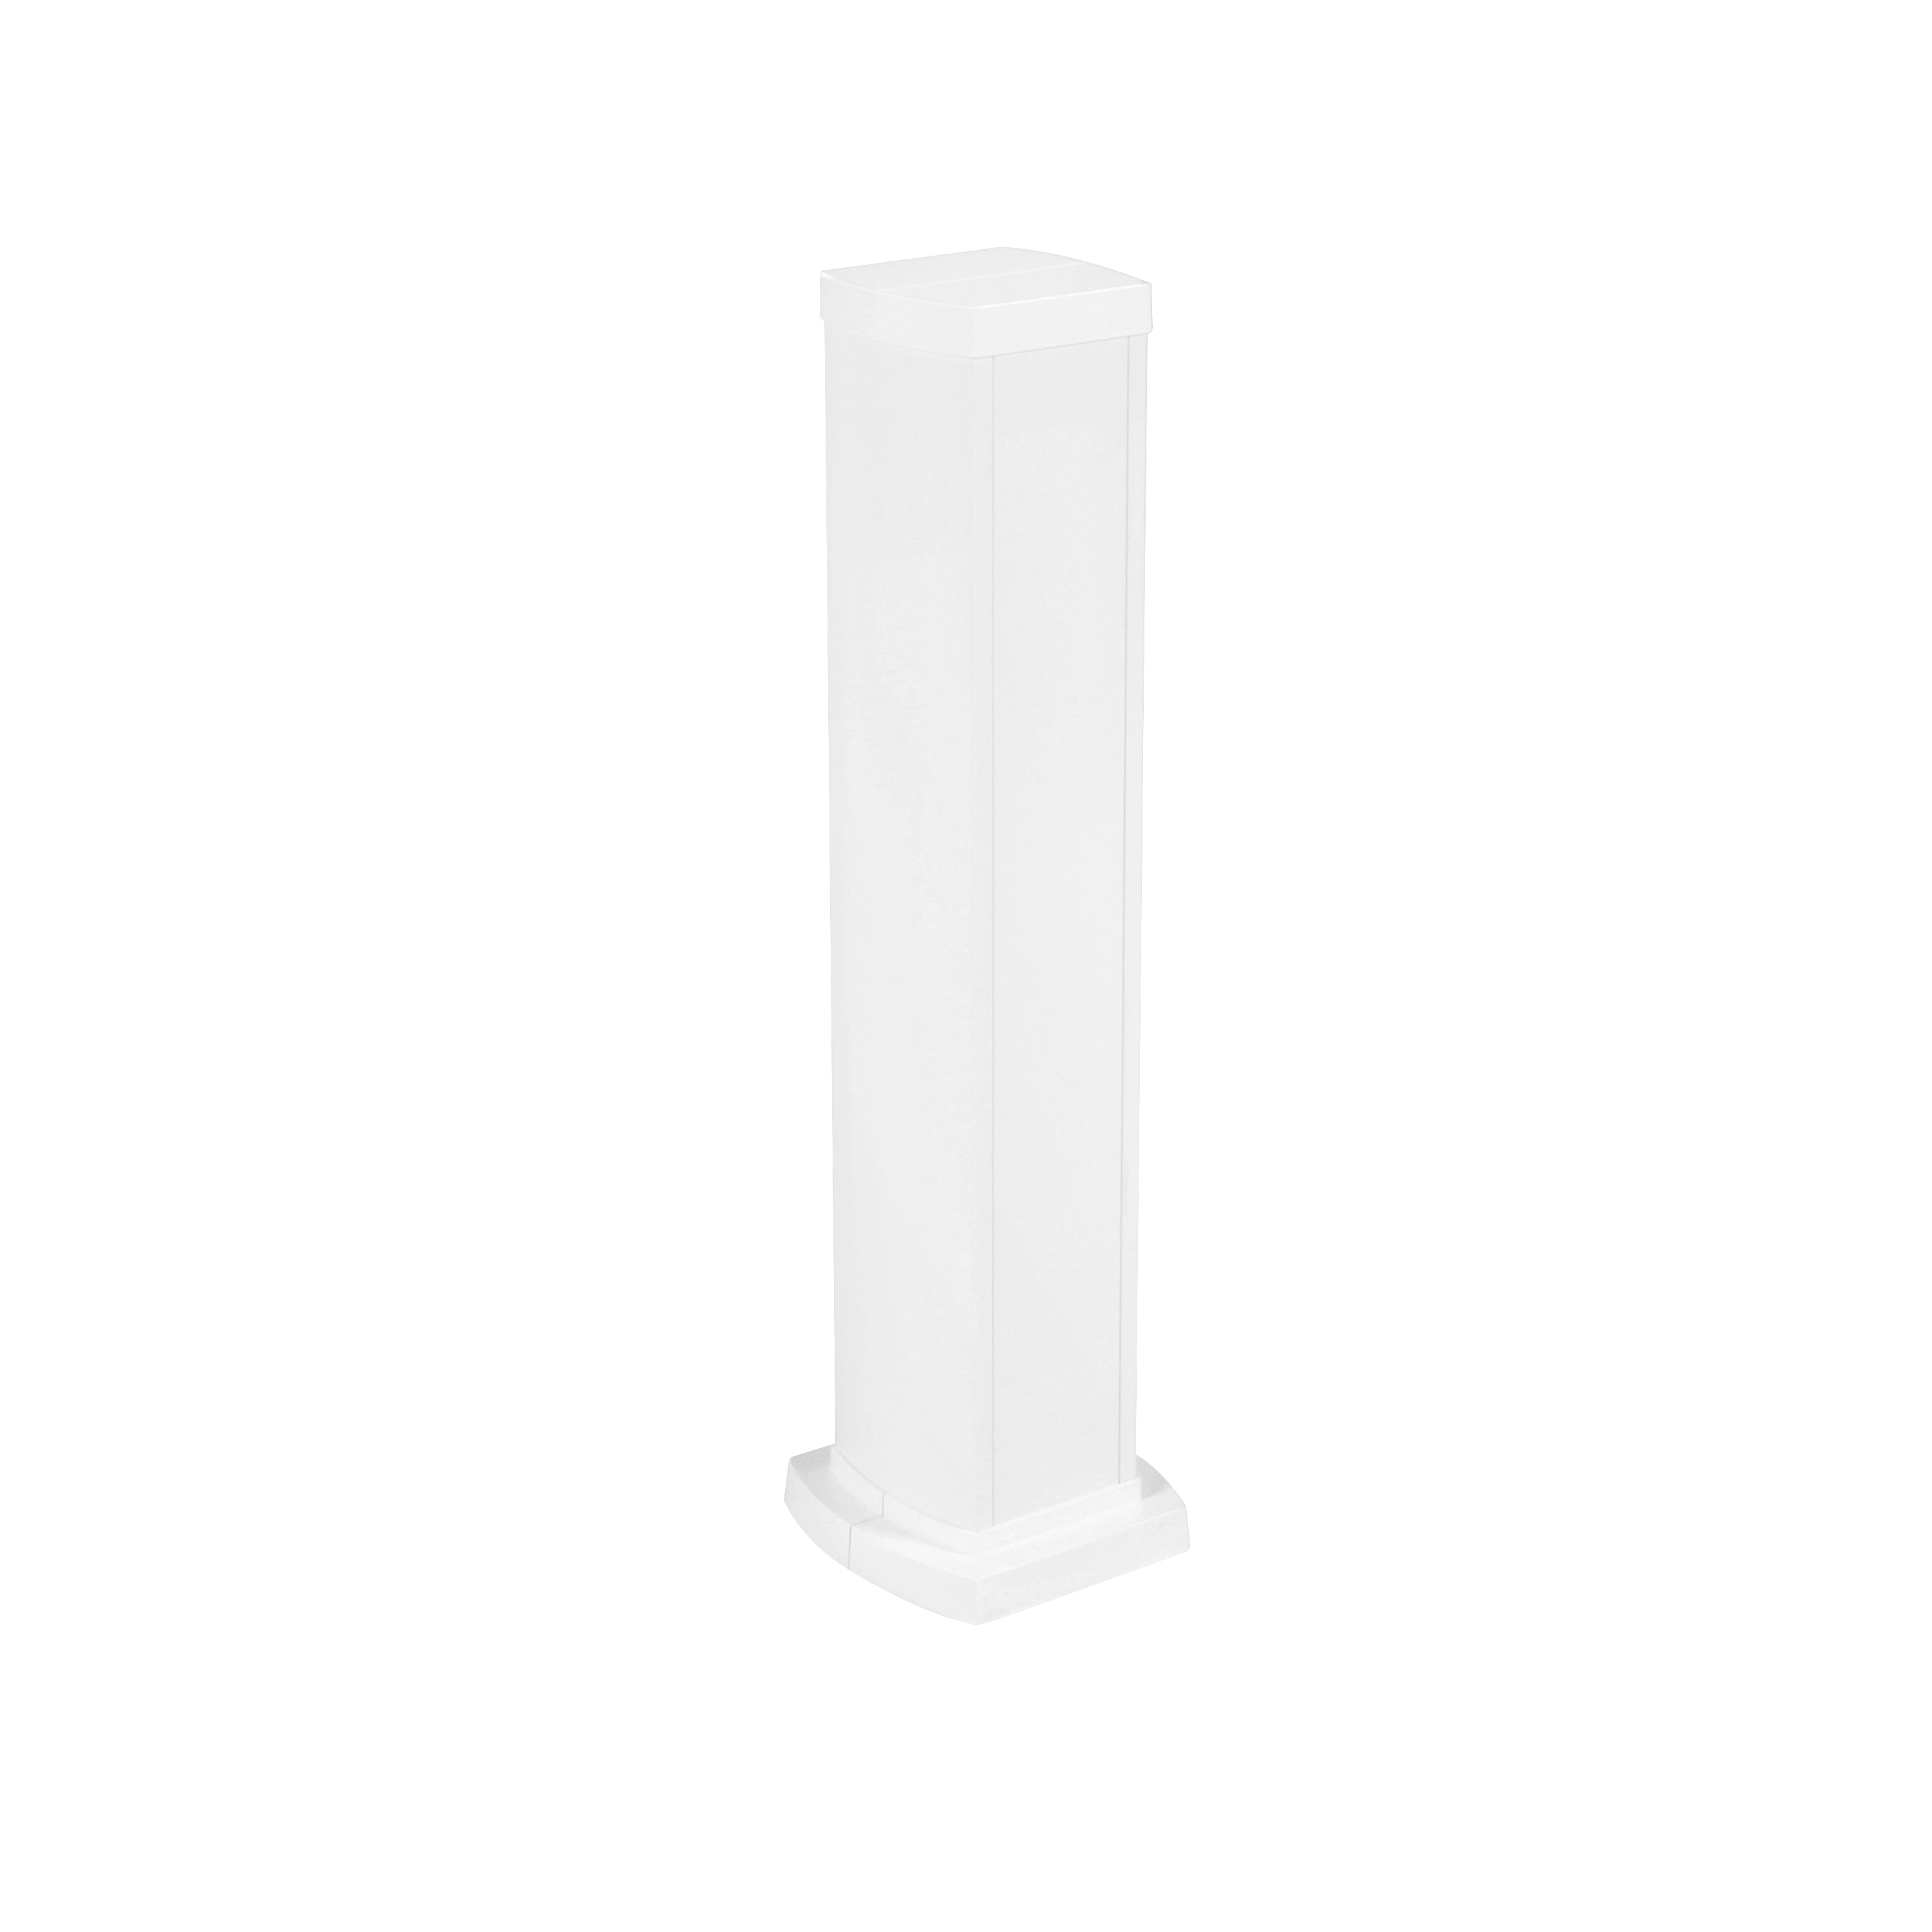 Универсальная мини-колонна алюминиевая с крышкой из алюминия 2 секции, высота 0,68 метра, цвет белый 653123 Legrand